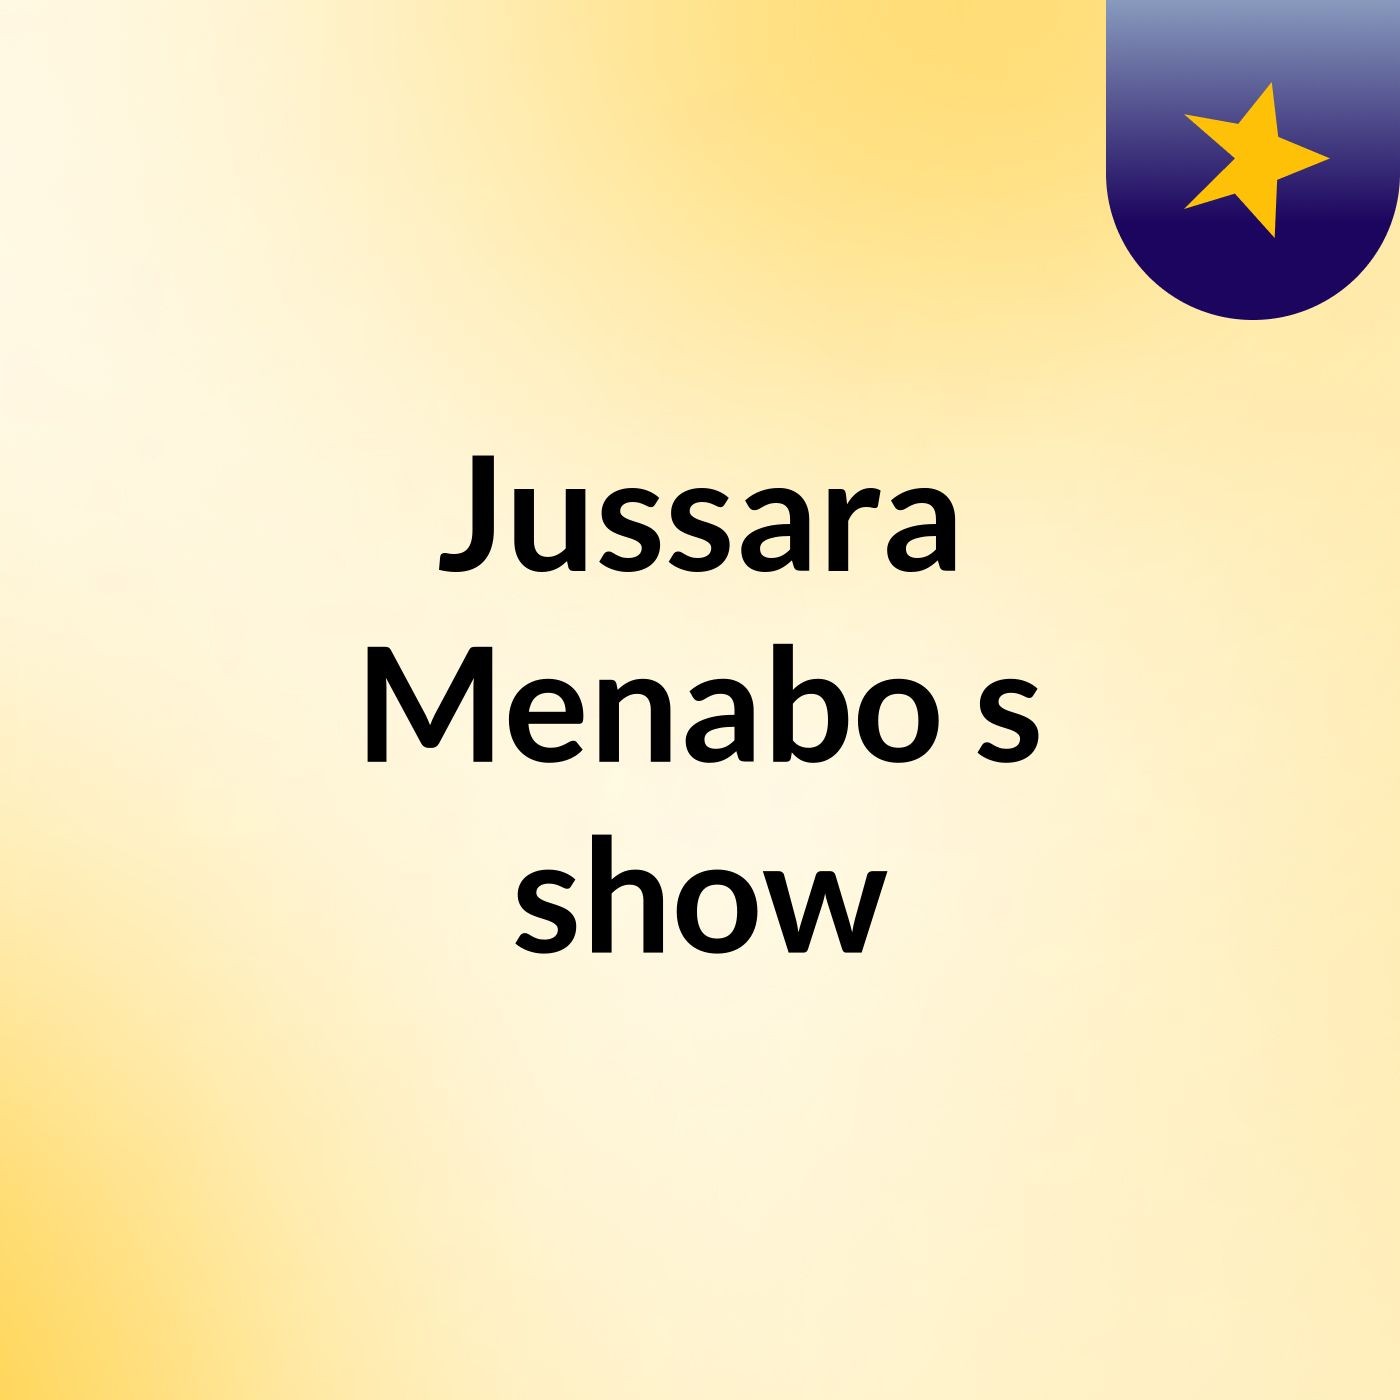 Jussara Menabo's show